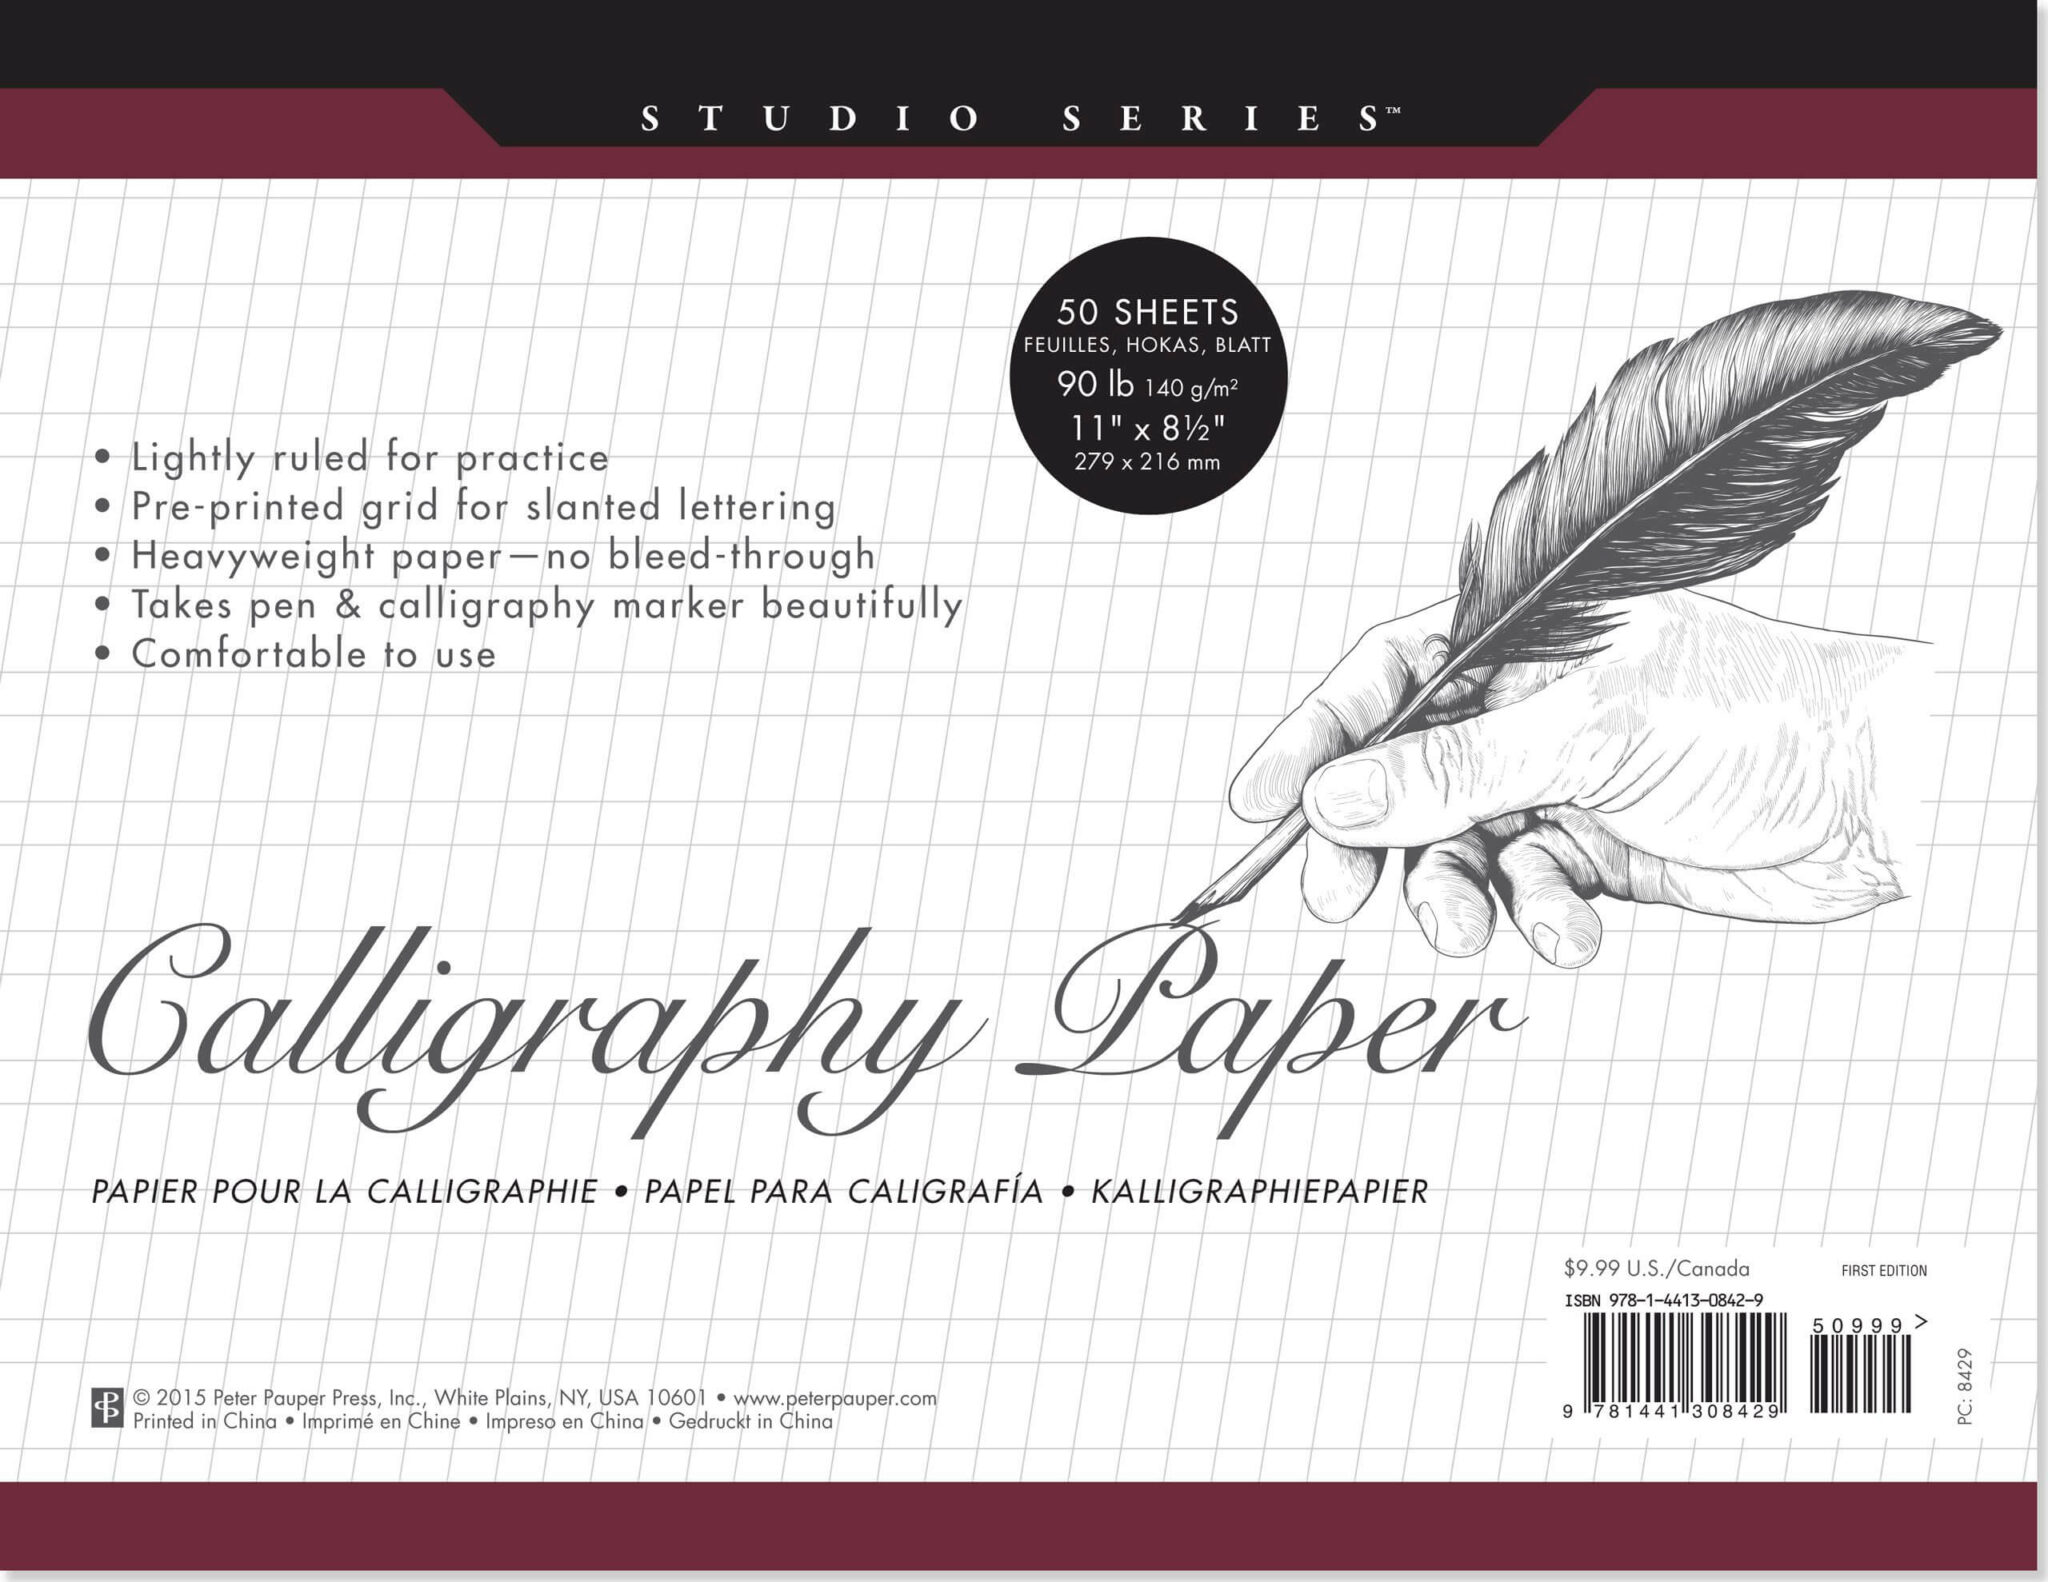 Beste Kalligrafiepapieren - Beoordeeld En Beoordeeld In 2021